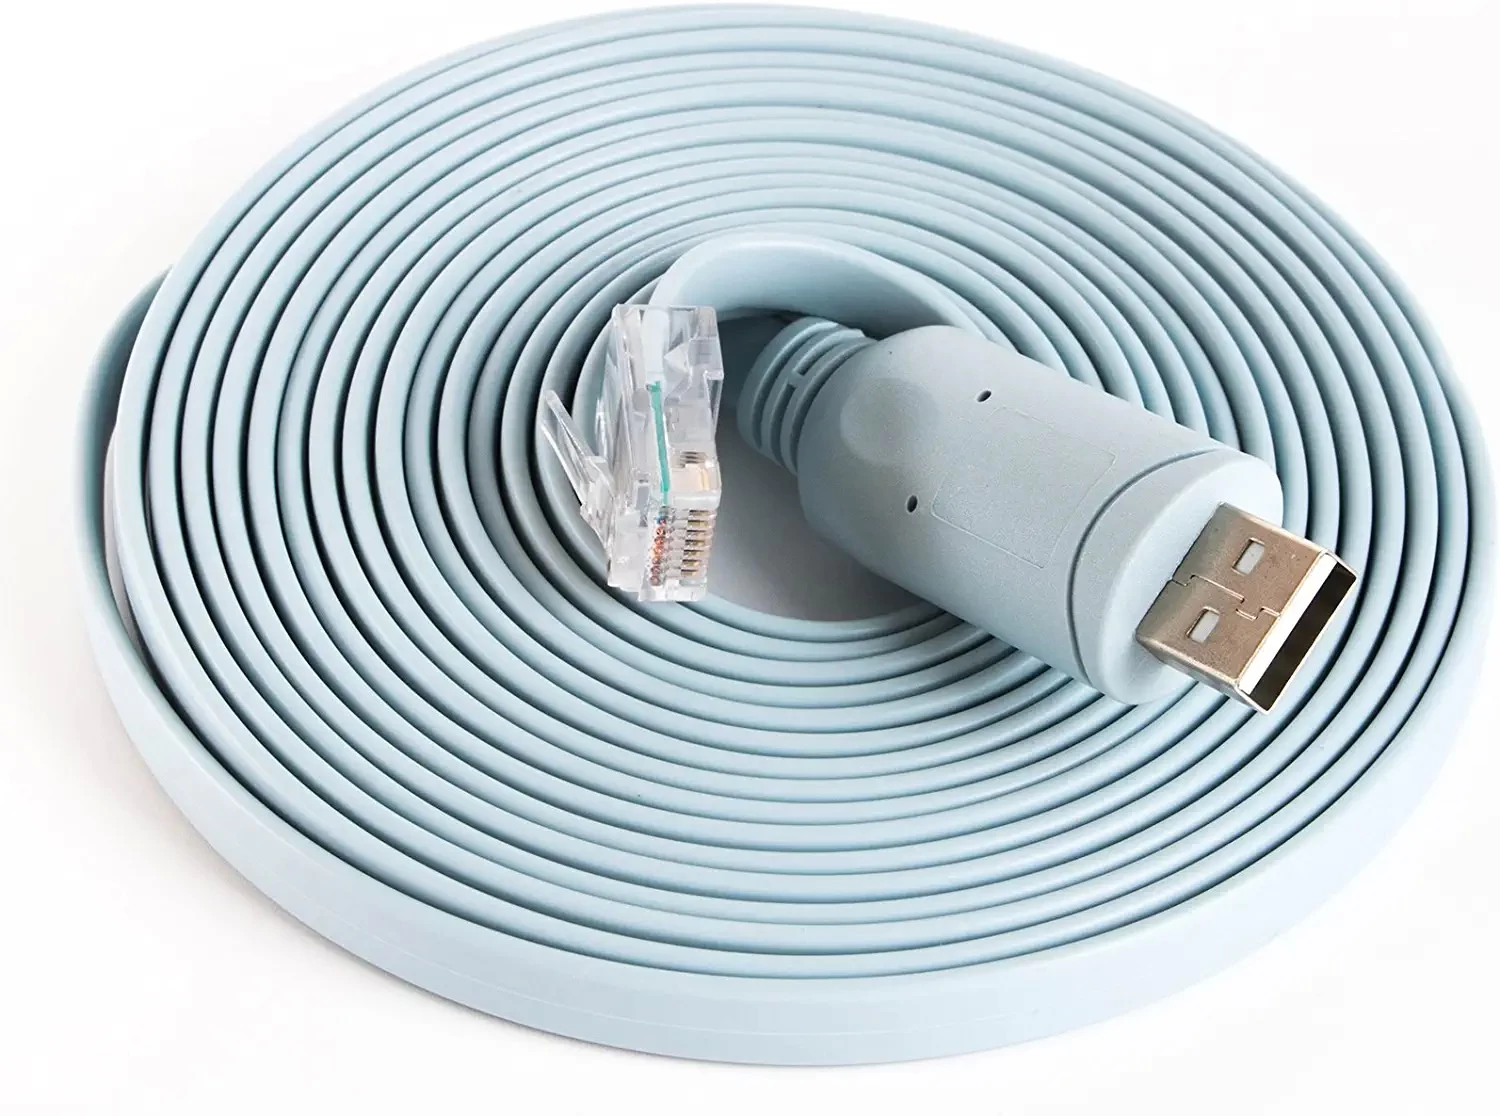 porcelana Cable de consola USB de repuesto para Cisco Router Cable Ftdi Chipset USB a Rj45 Cable adaptador para portátiles en Windows, Mac, Linux fabricante